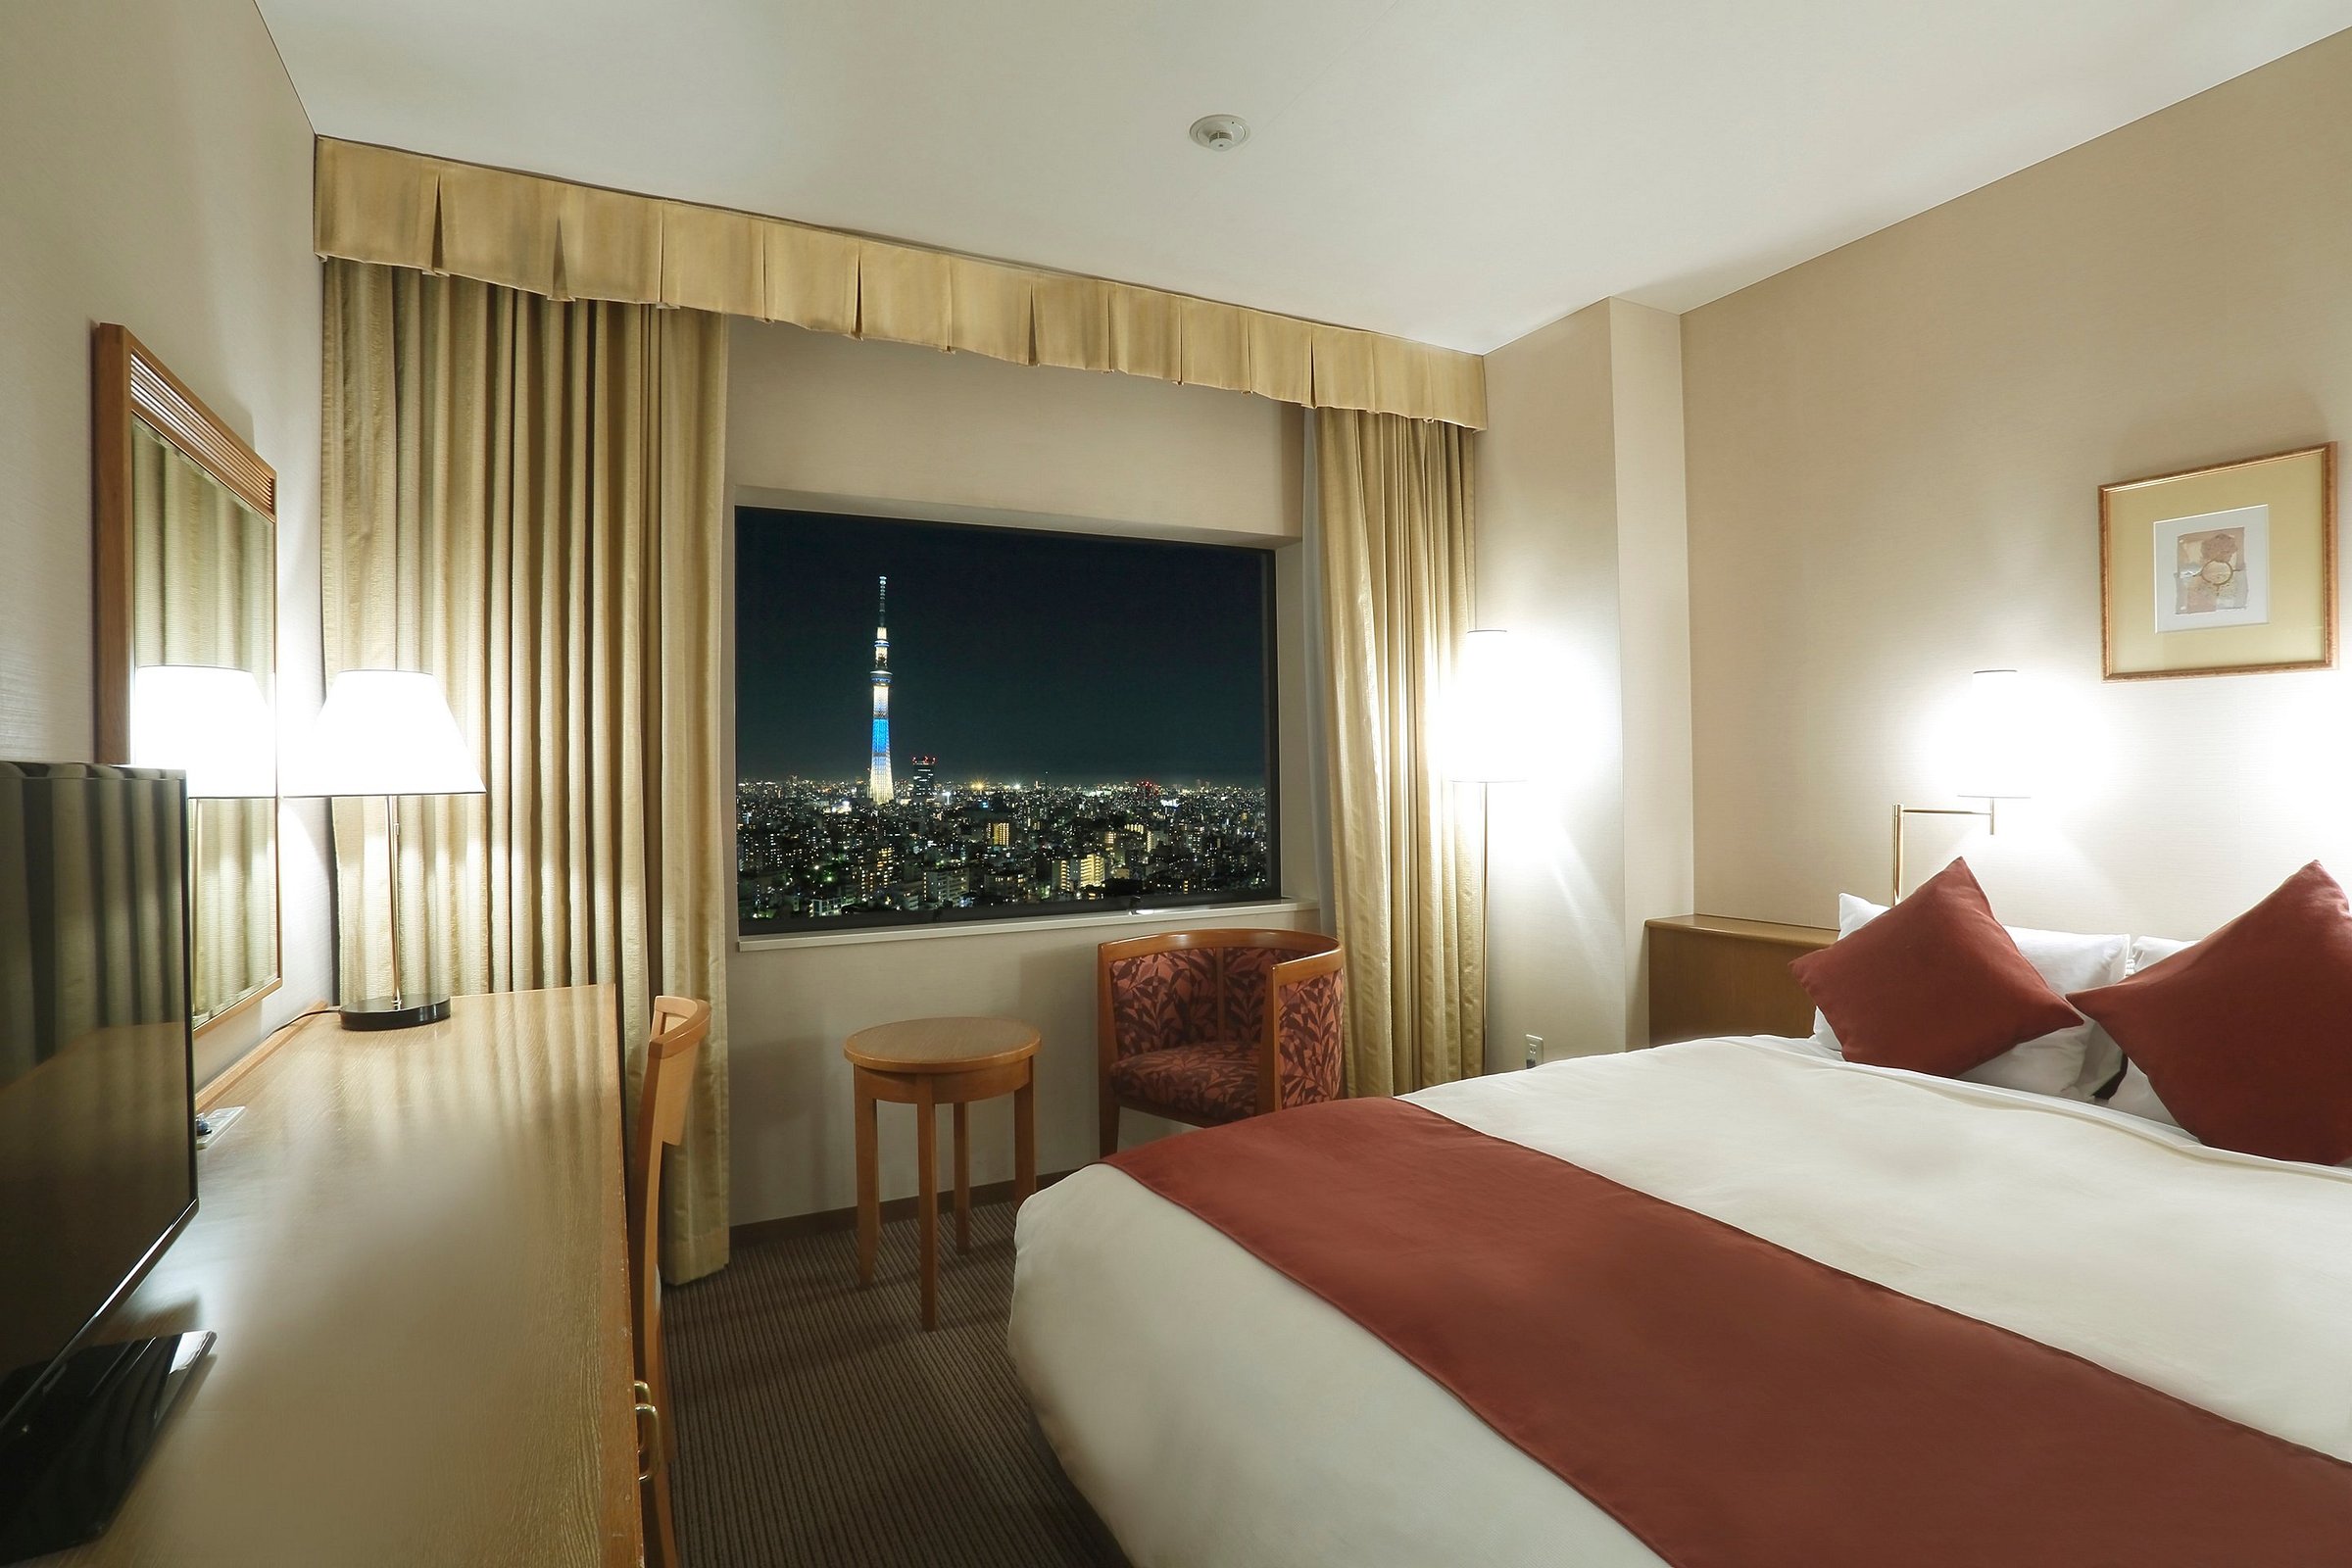 Dai Ichi Hotel Ryogoku 38 ̶9̶6̶ Prices And Reviews Tokyo Japan